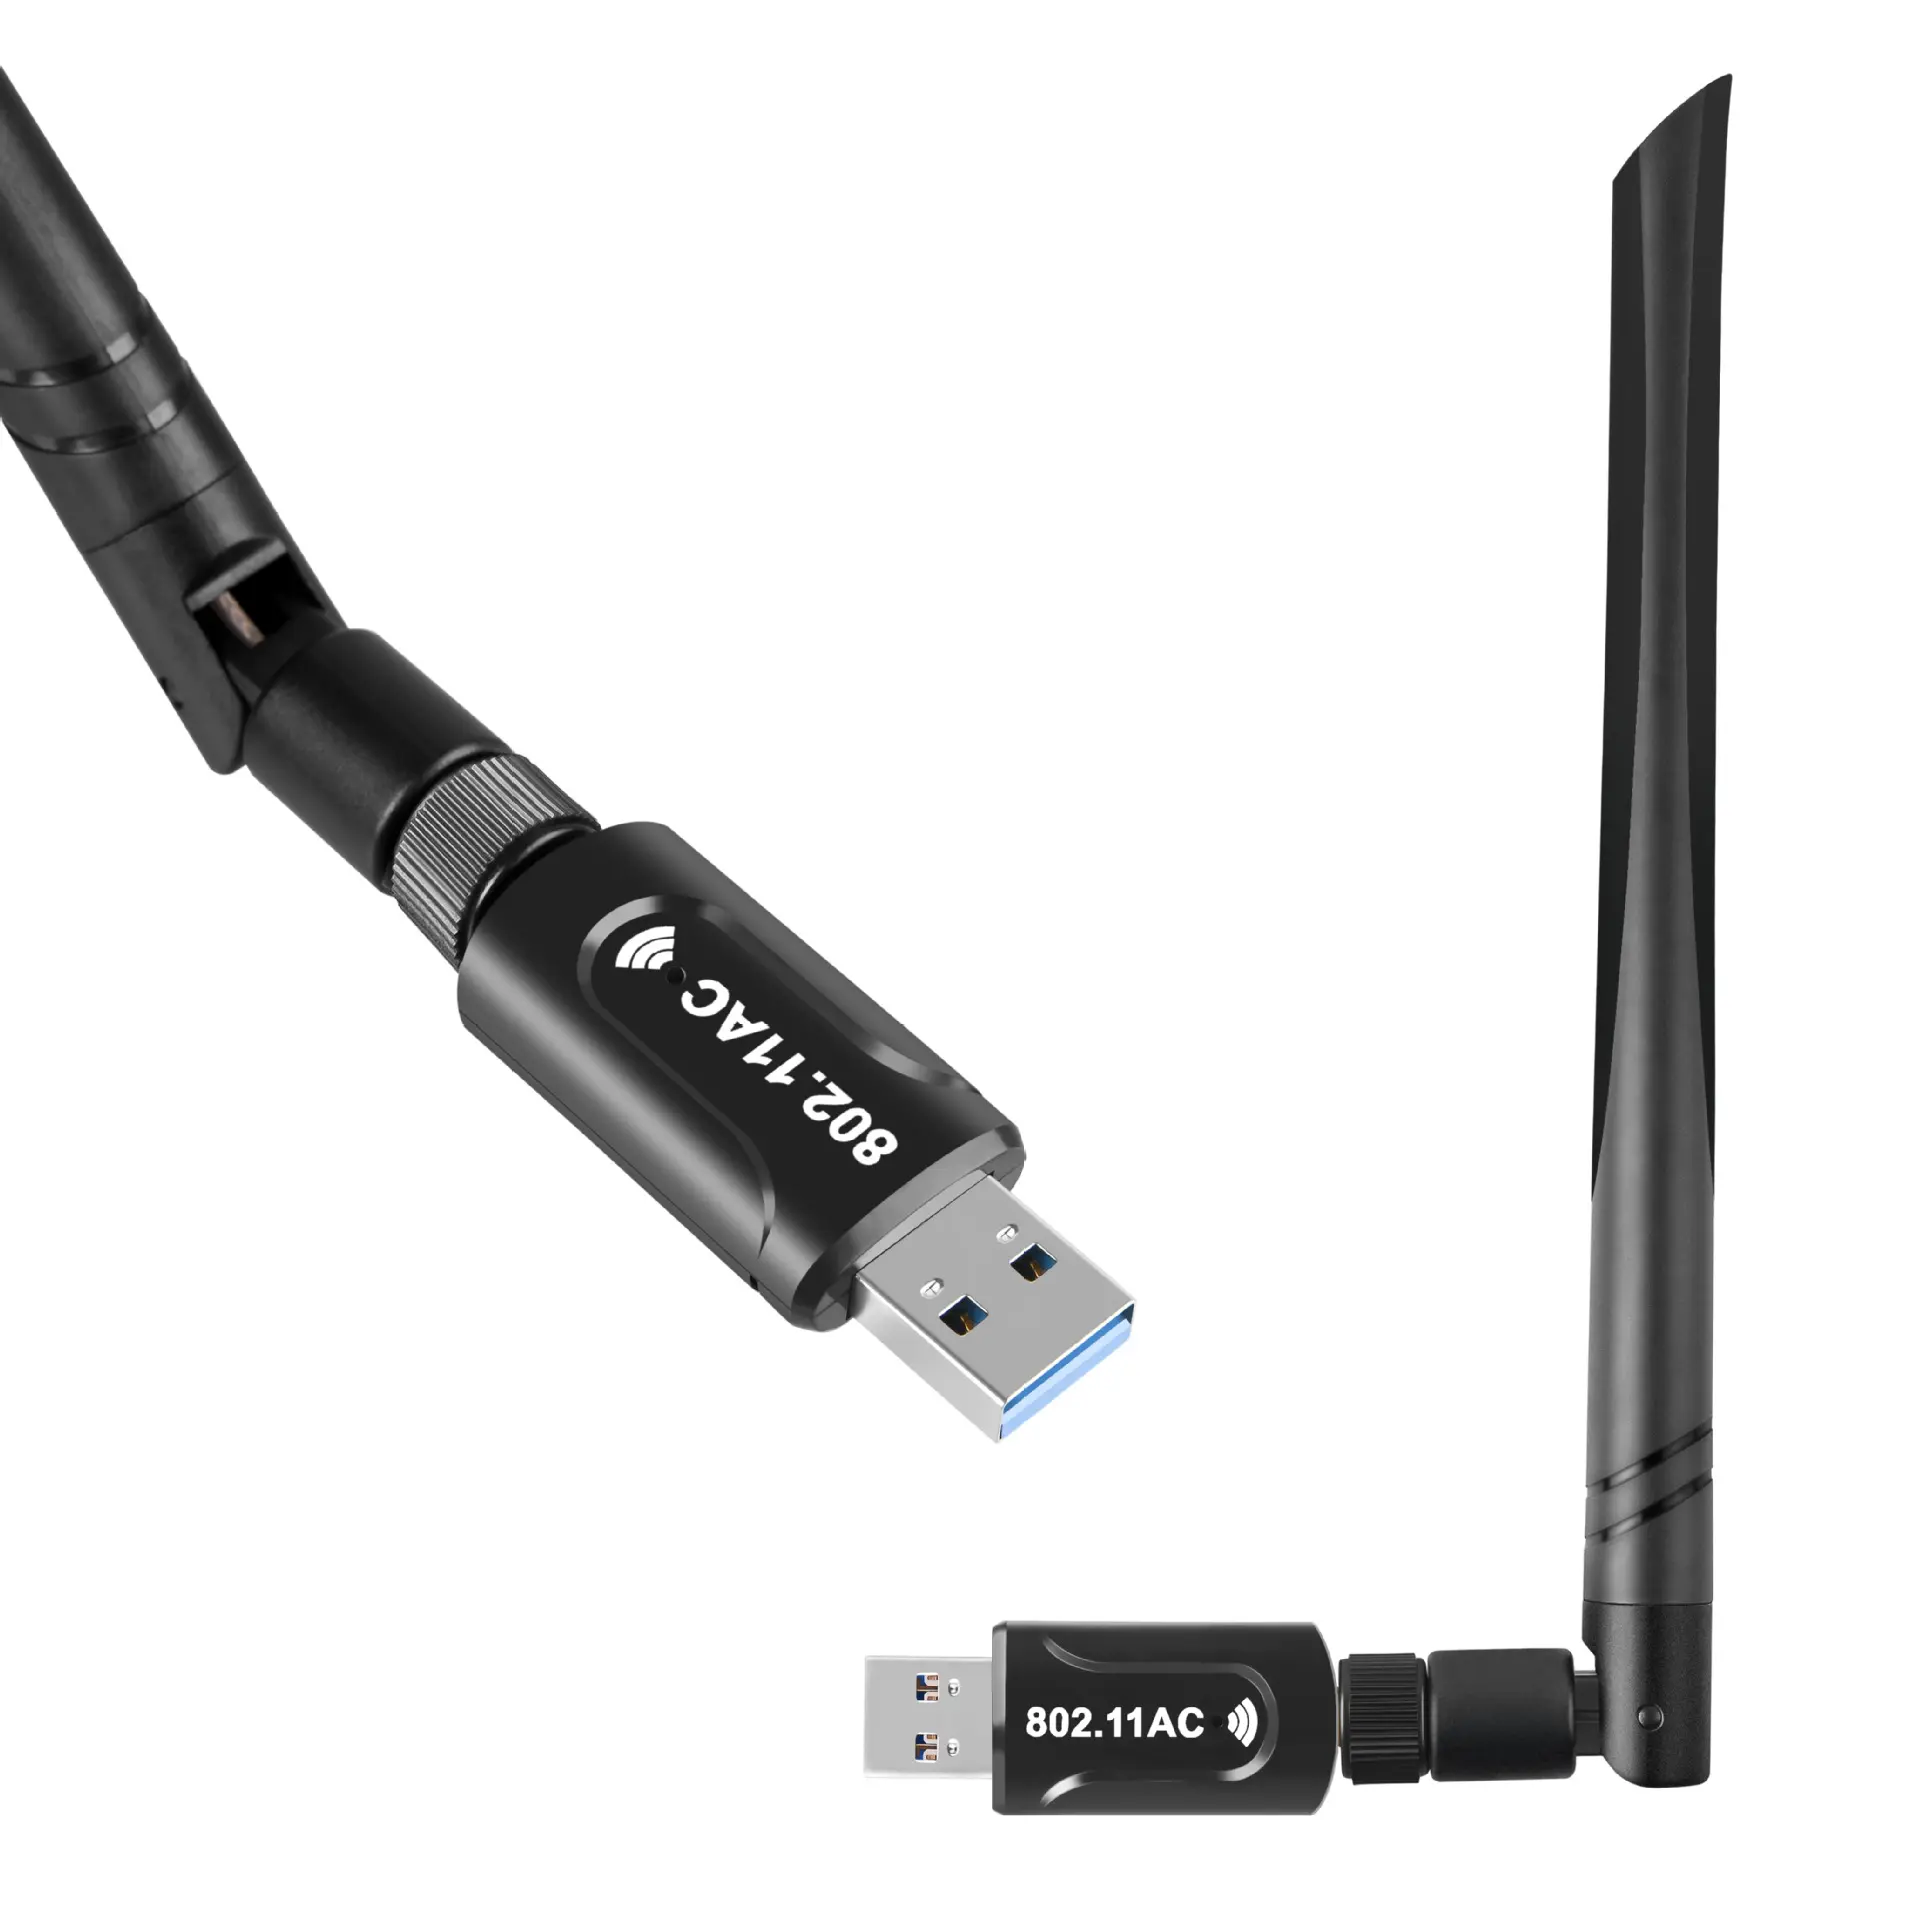 Fahrer-freies 1200M drahtlose netzwerk karte 2,4G/5,8G USB 3,0 dual frequenz drahtlose netzwerk karte wifi empfänger